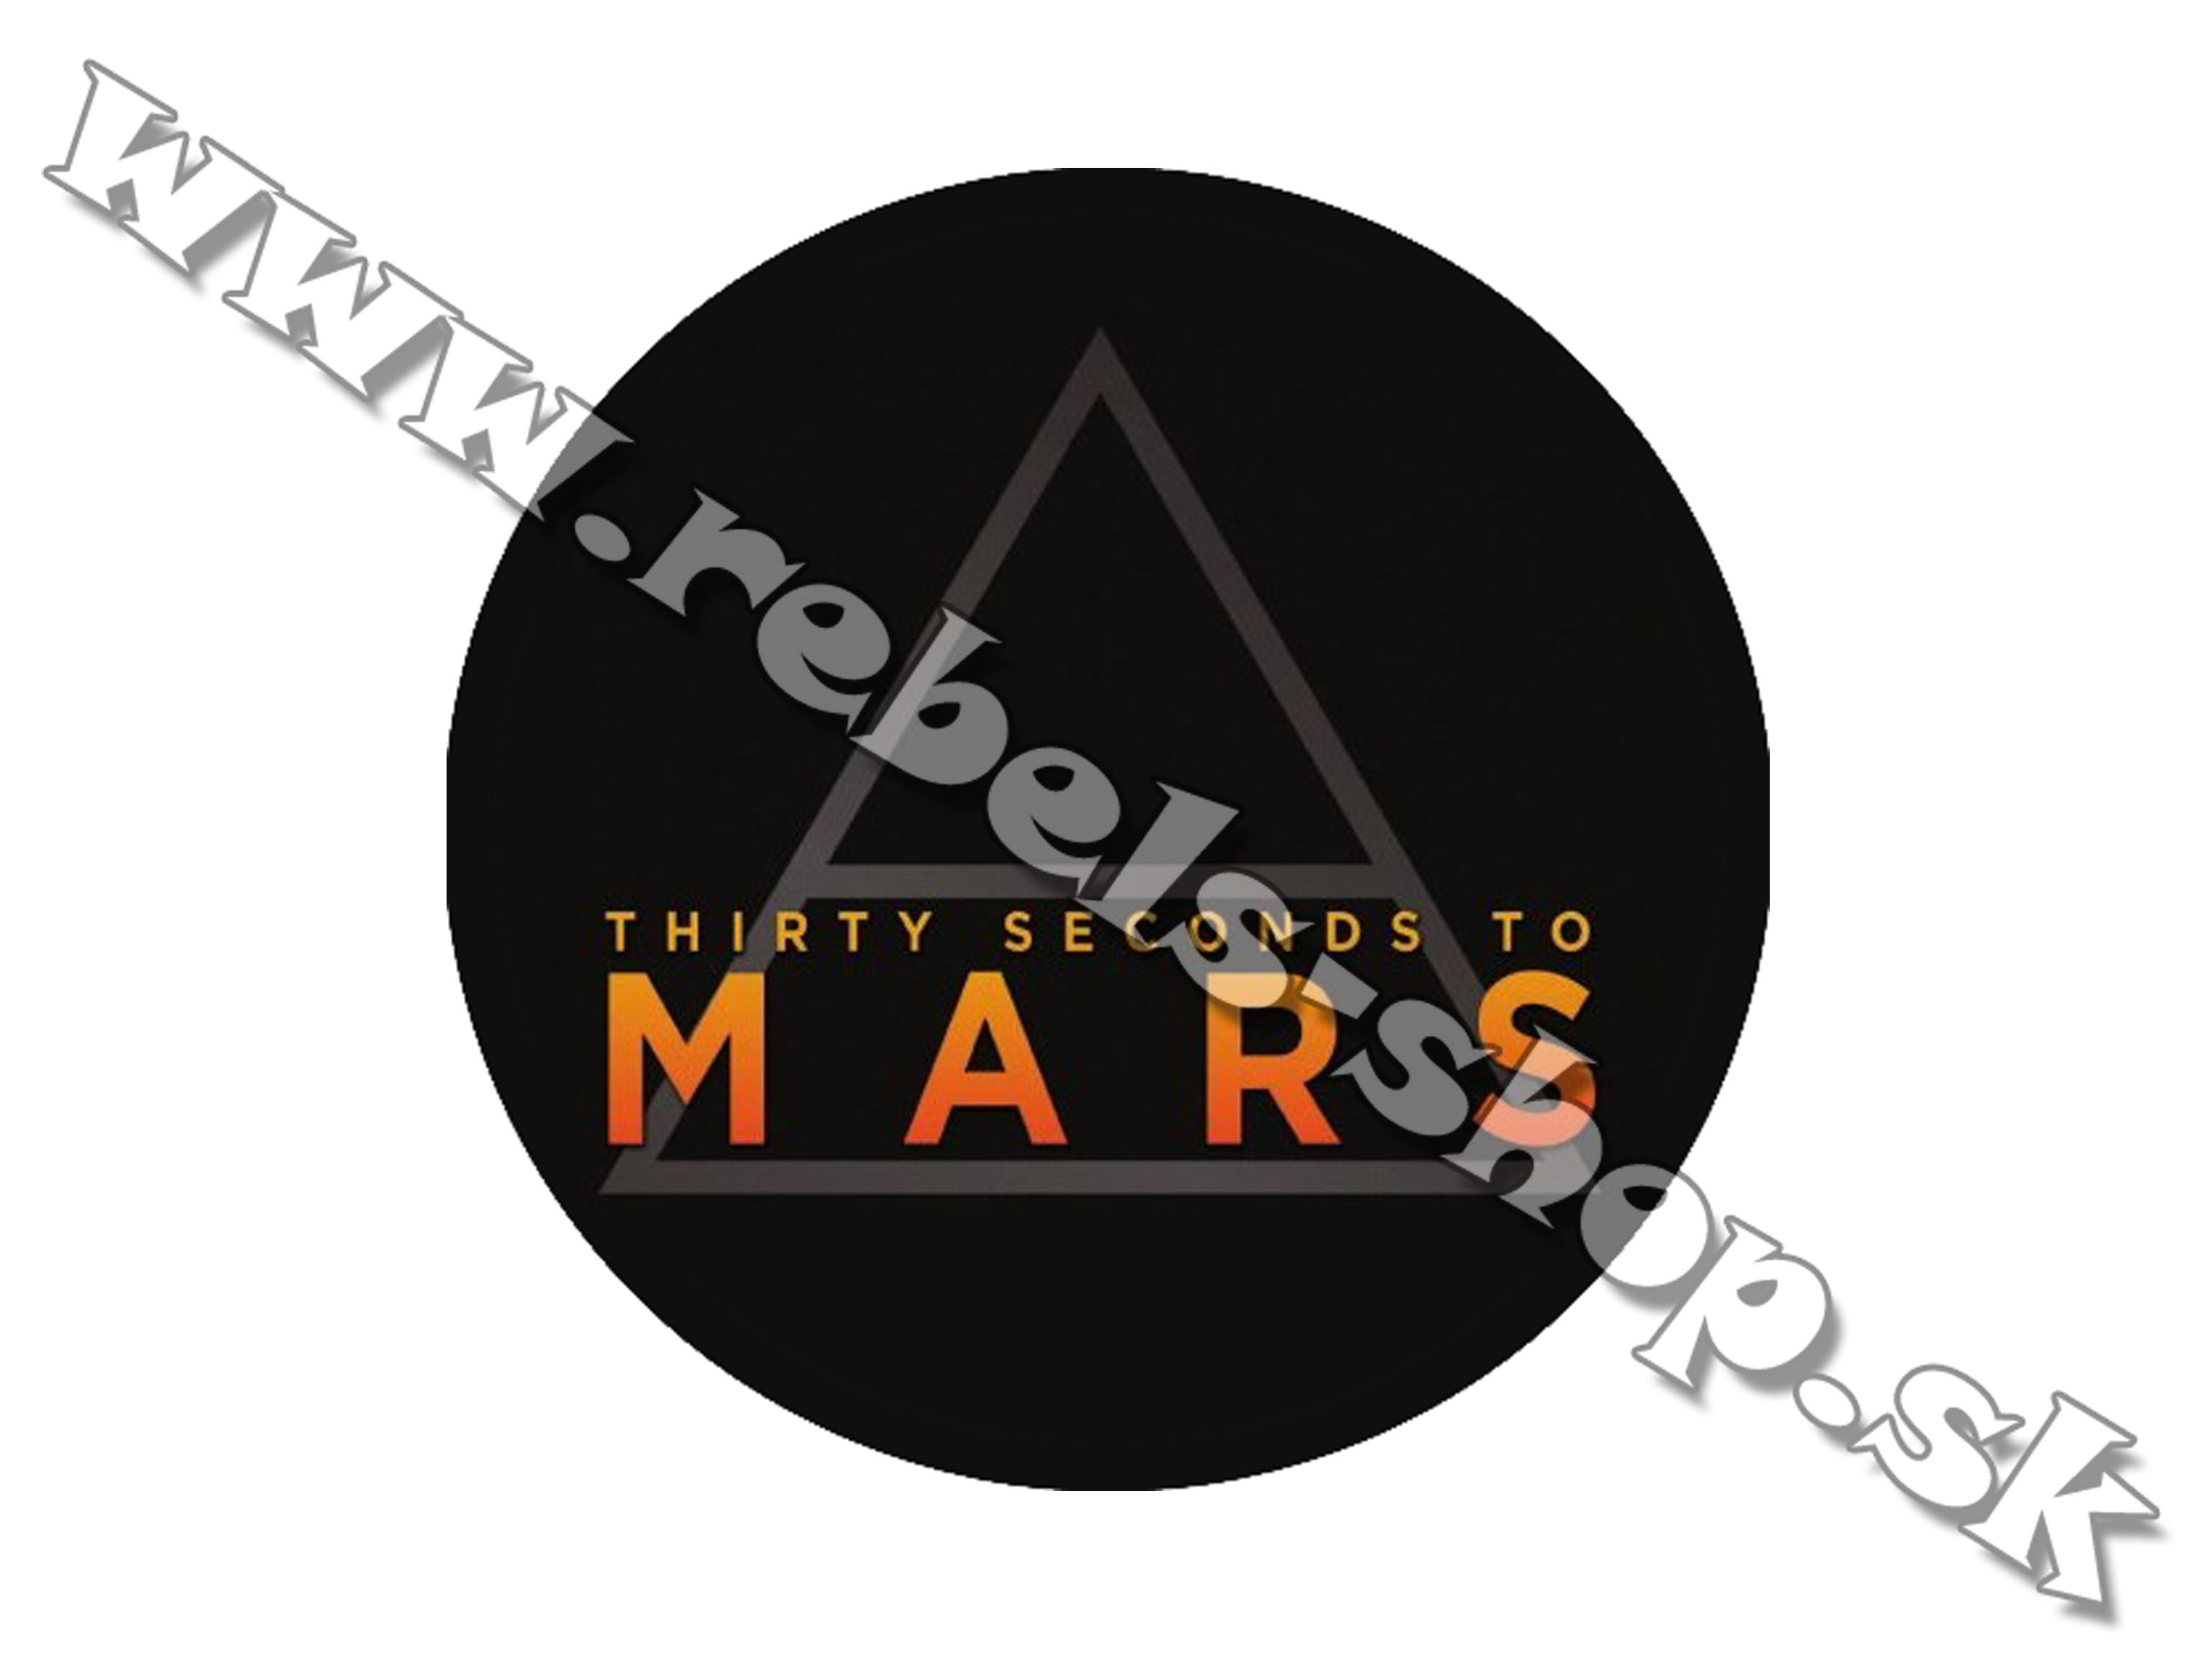 Odznak "30 Seconds To Mars"